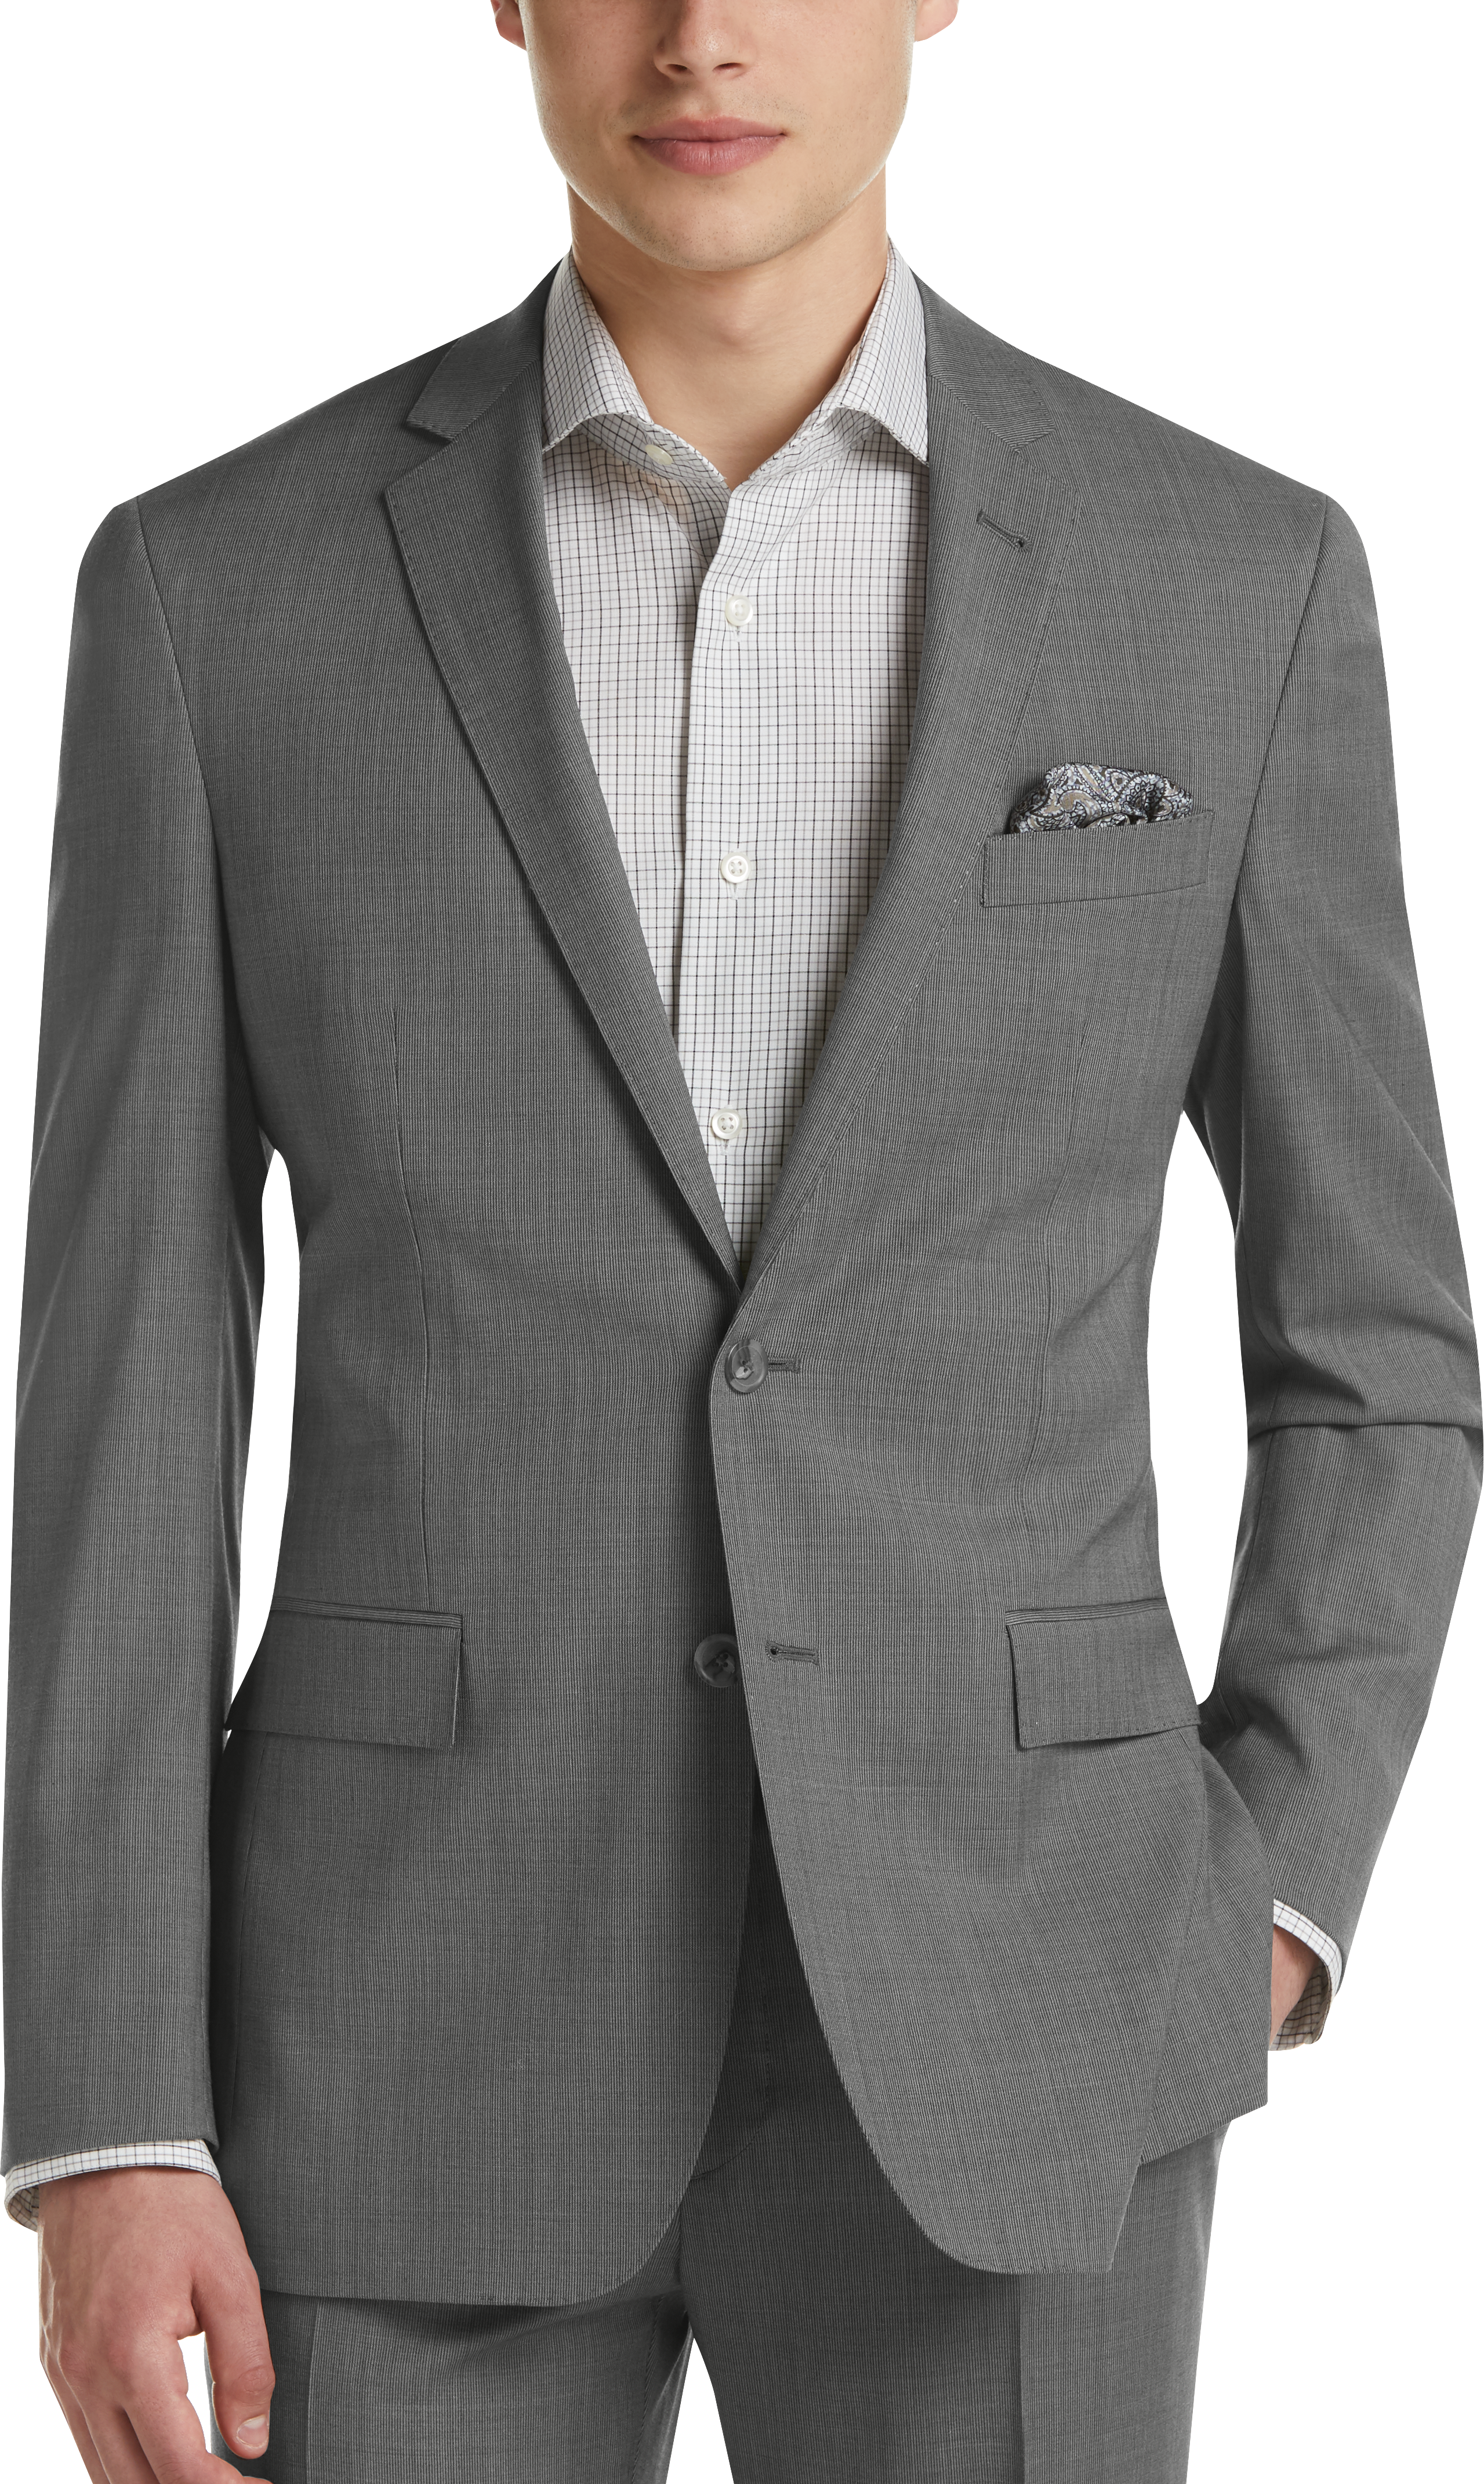 JOE Joseph Abboud Gray Stripe Slim Fit Suit - Men's Suits | Men's Wearhouse